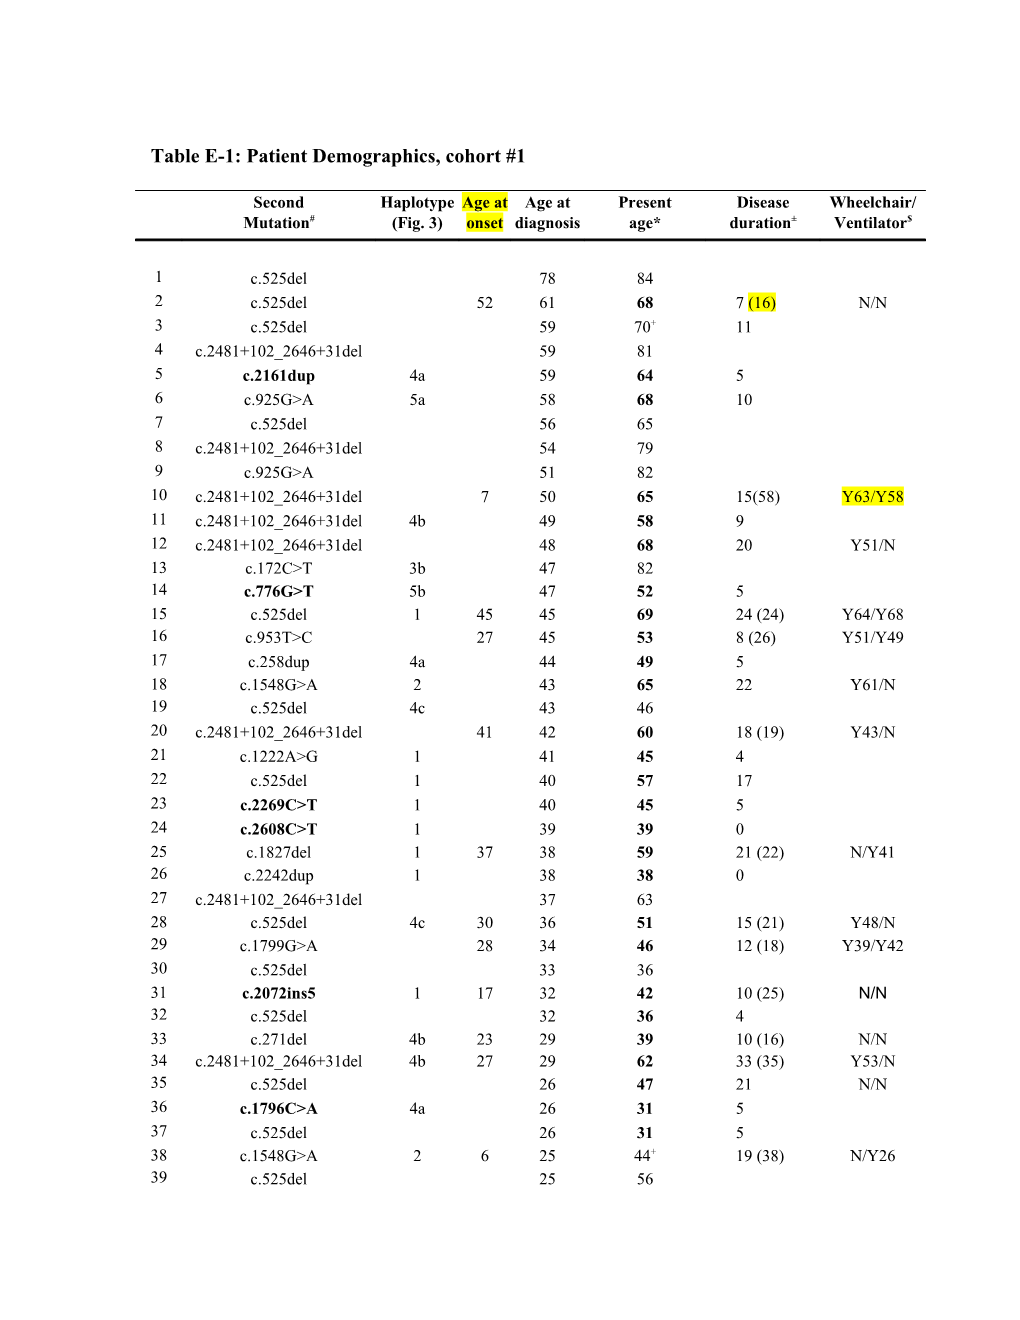 Table E-1: Patient Demographics, Cohort #1